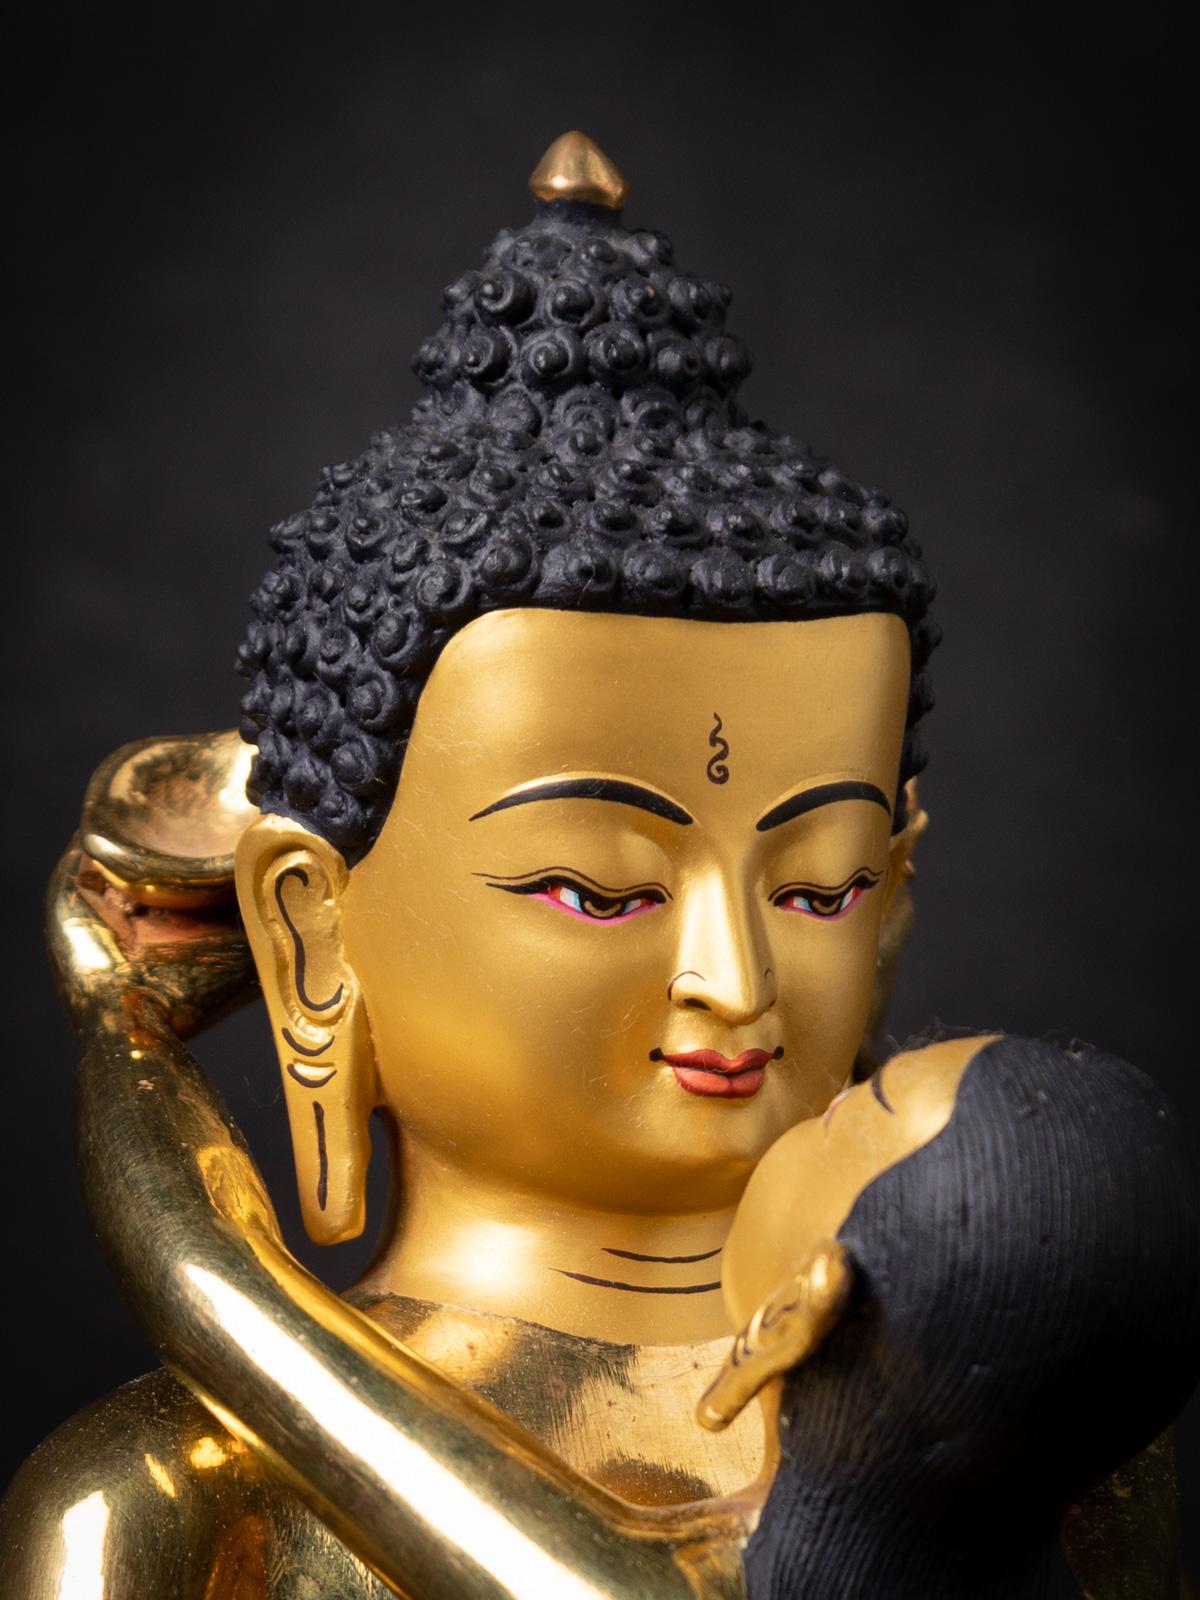 La statue en bronze de Samantabhadra, originaire du Népal, est un artefact captivant et spirituellement significatif. Réalisée en bronze et ornée d'une dorure au feu en or 24 carats, cette statue mesure 29 cm de hauteur, 19,5 cm de largeur et 17,5